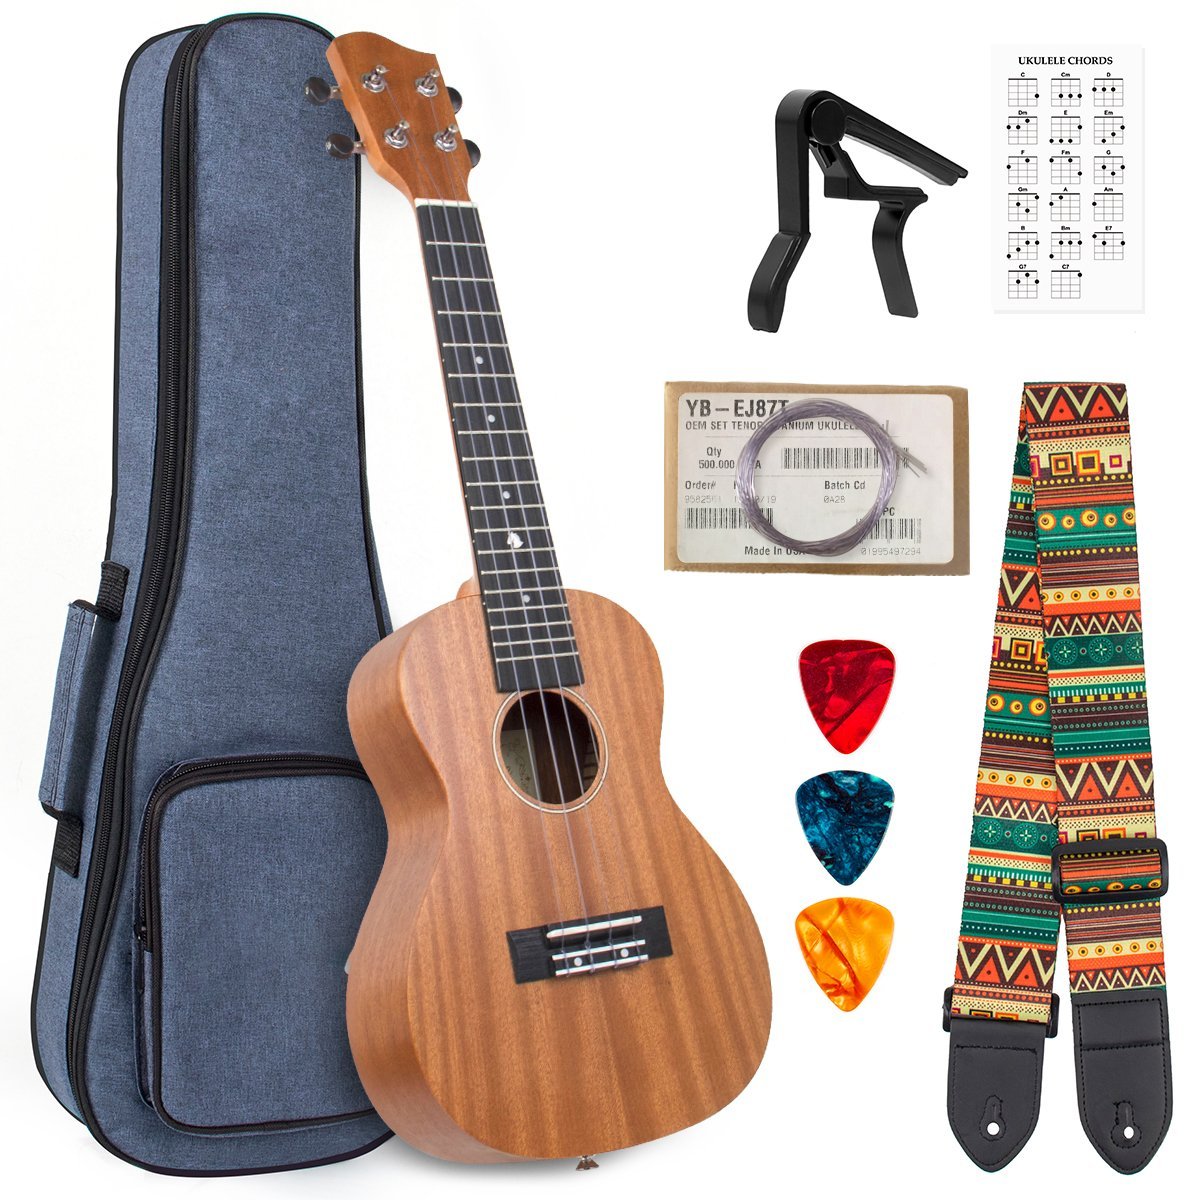 Concert Ukulele Tenor Mahogany 23/26 Inch Ukelele Starter Kit w/ Bag Strap String Capo Picks for Christmas Gifts - AKLOT